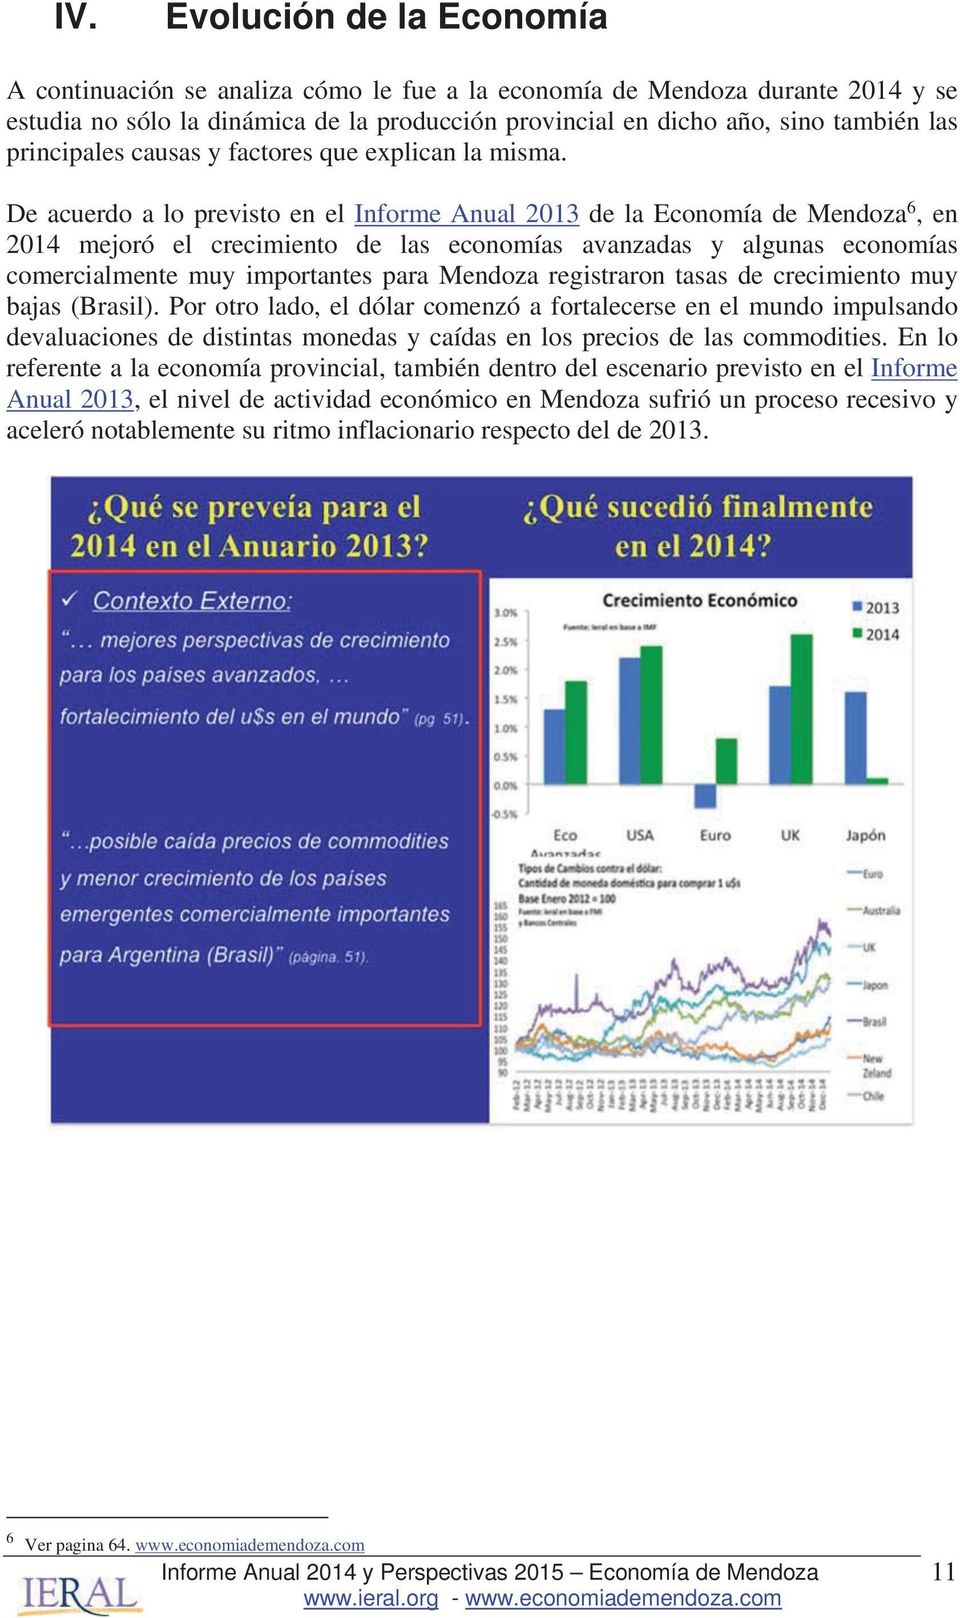 De acuerdo a lo previsto en el Informe Anual 2013 de la Economía de Mendoza 6, en 2014 mejoró el crecimiento de las economías avanzadas y algunas economías comercialmente muy importantes para Mendoza